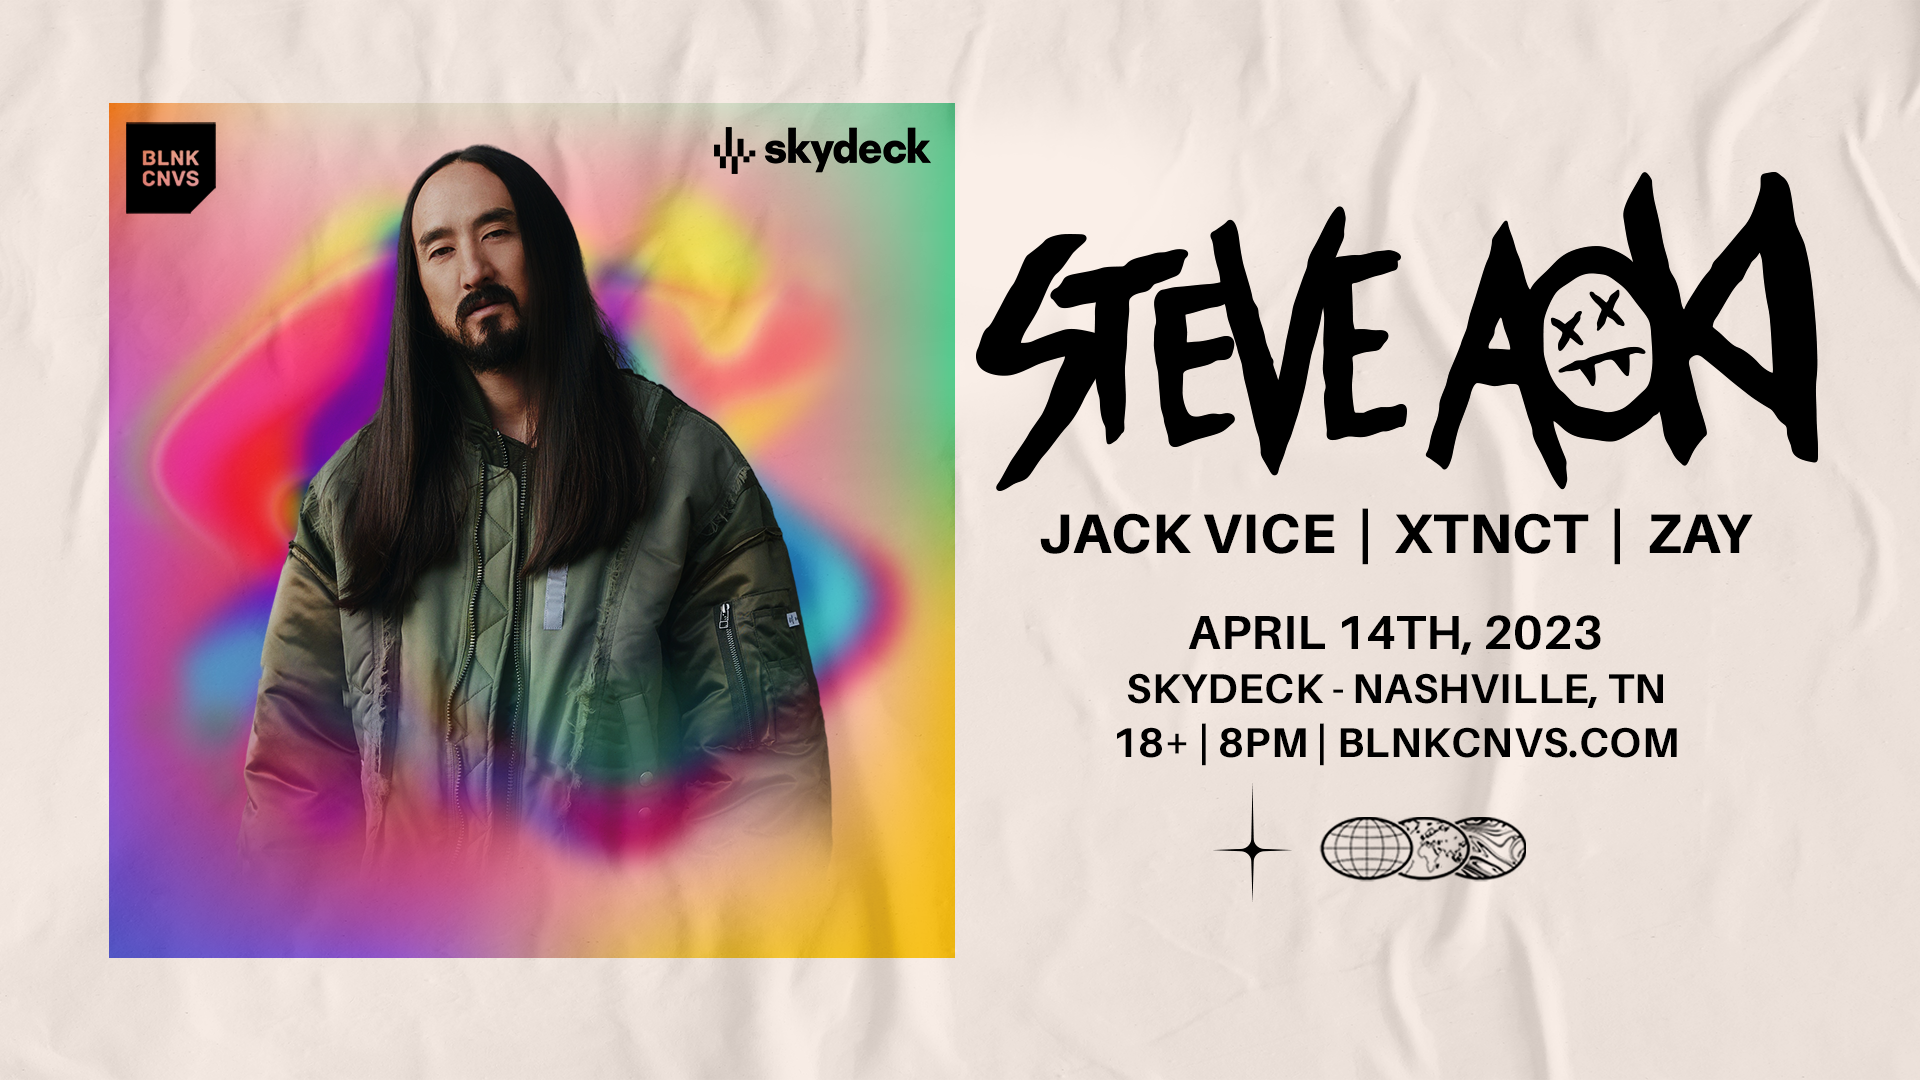 Promo image of Steve Aoki on Skydeck